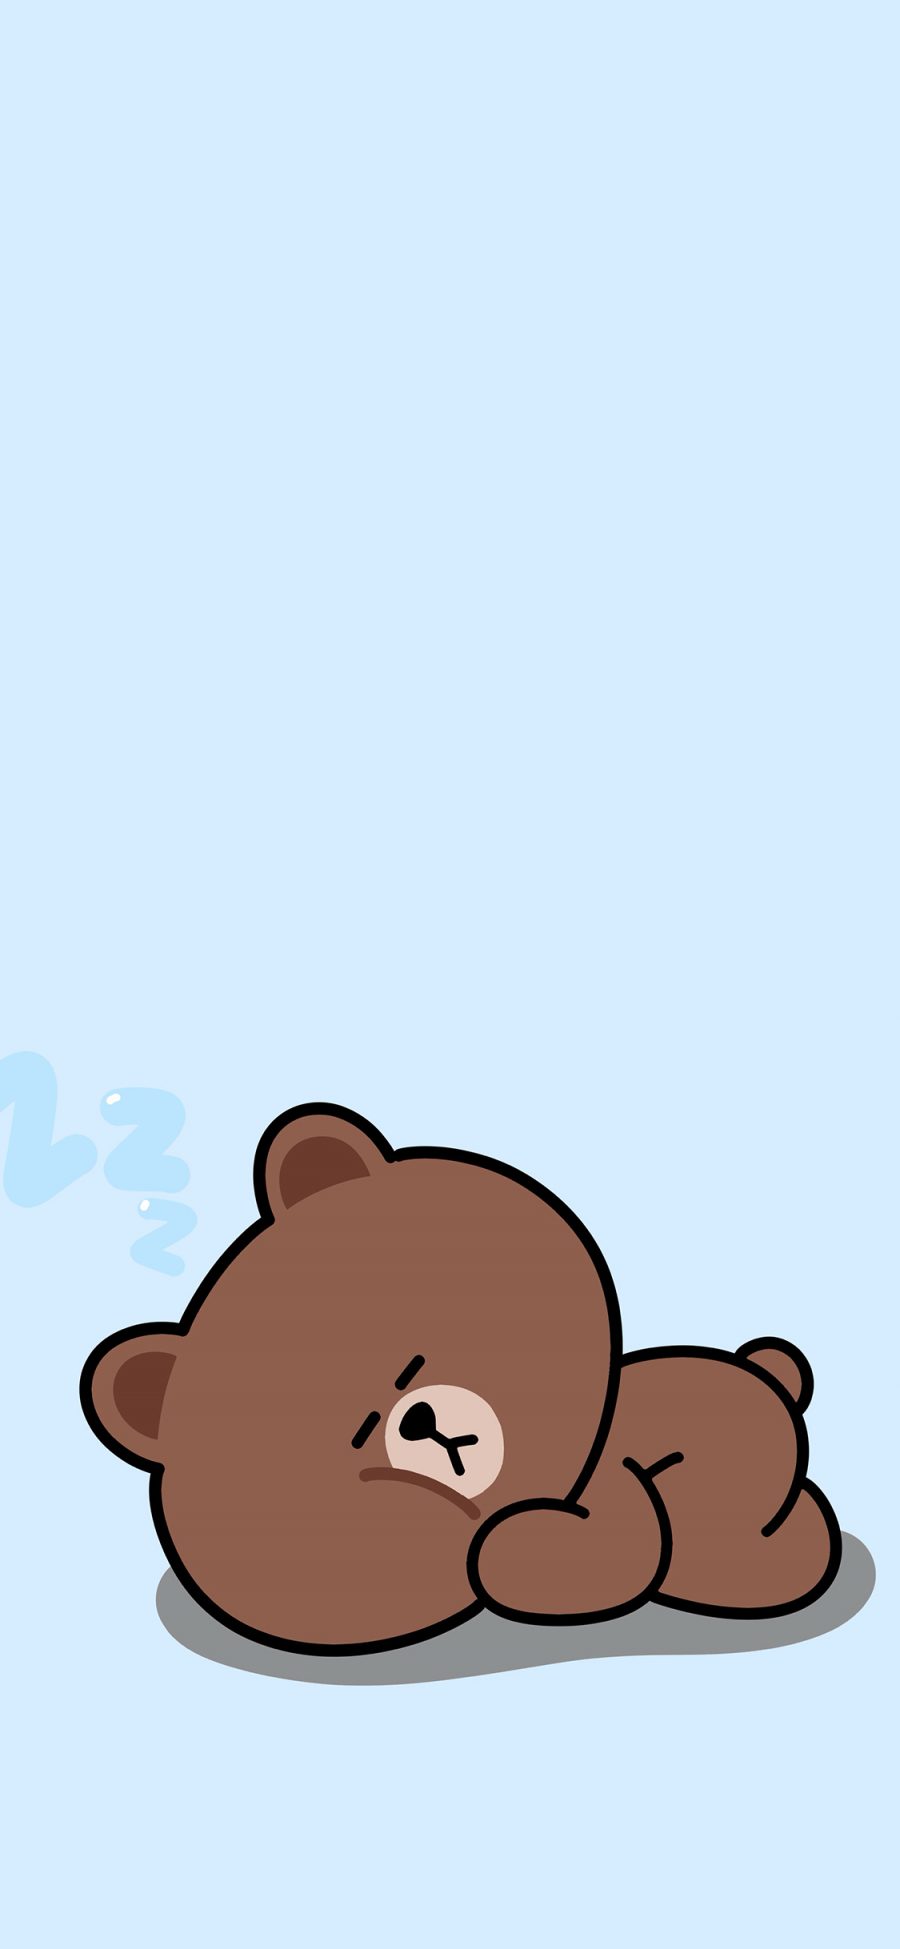 [2436×1125]布朗熊 蓝色 line friends 卡通 睡觉 可爱 苹果手机动漫壁纸图片